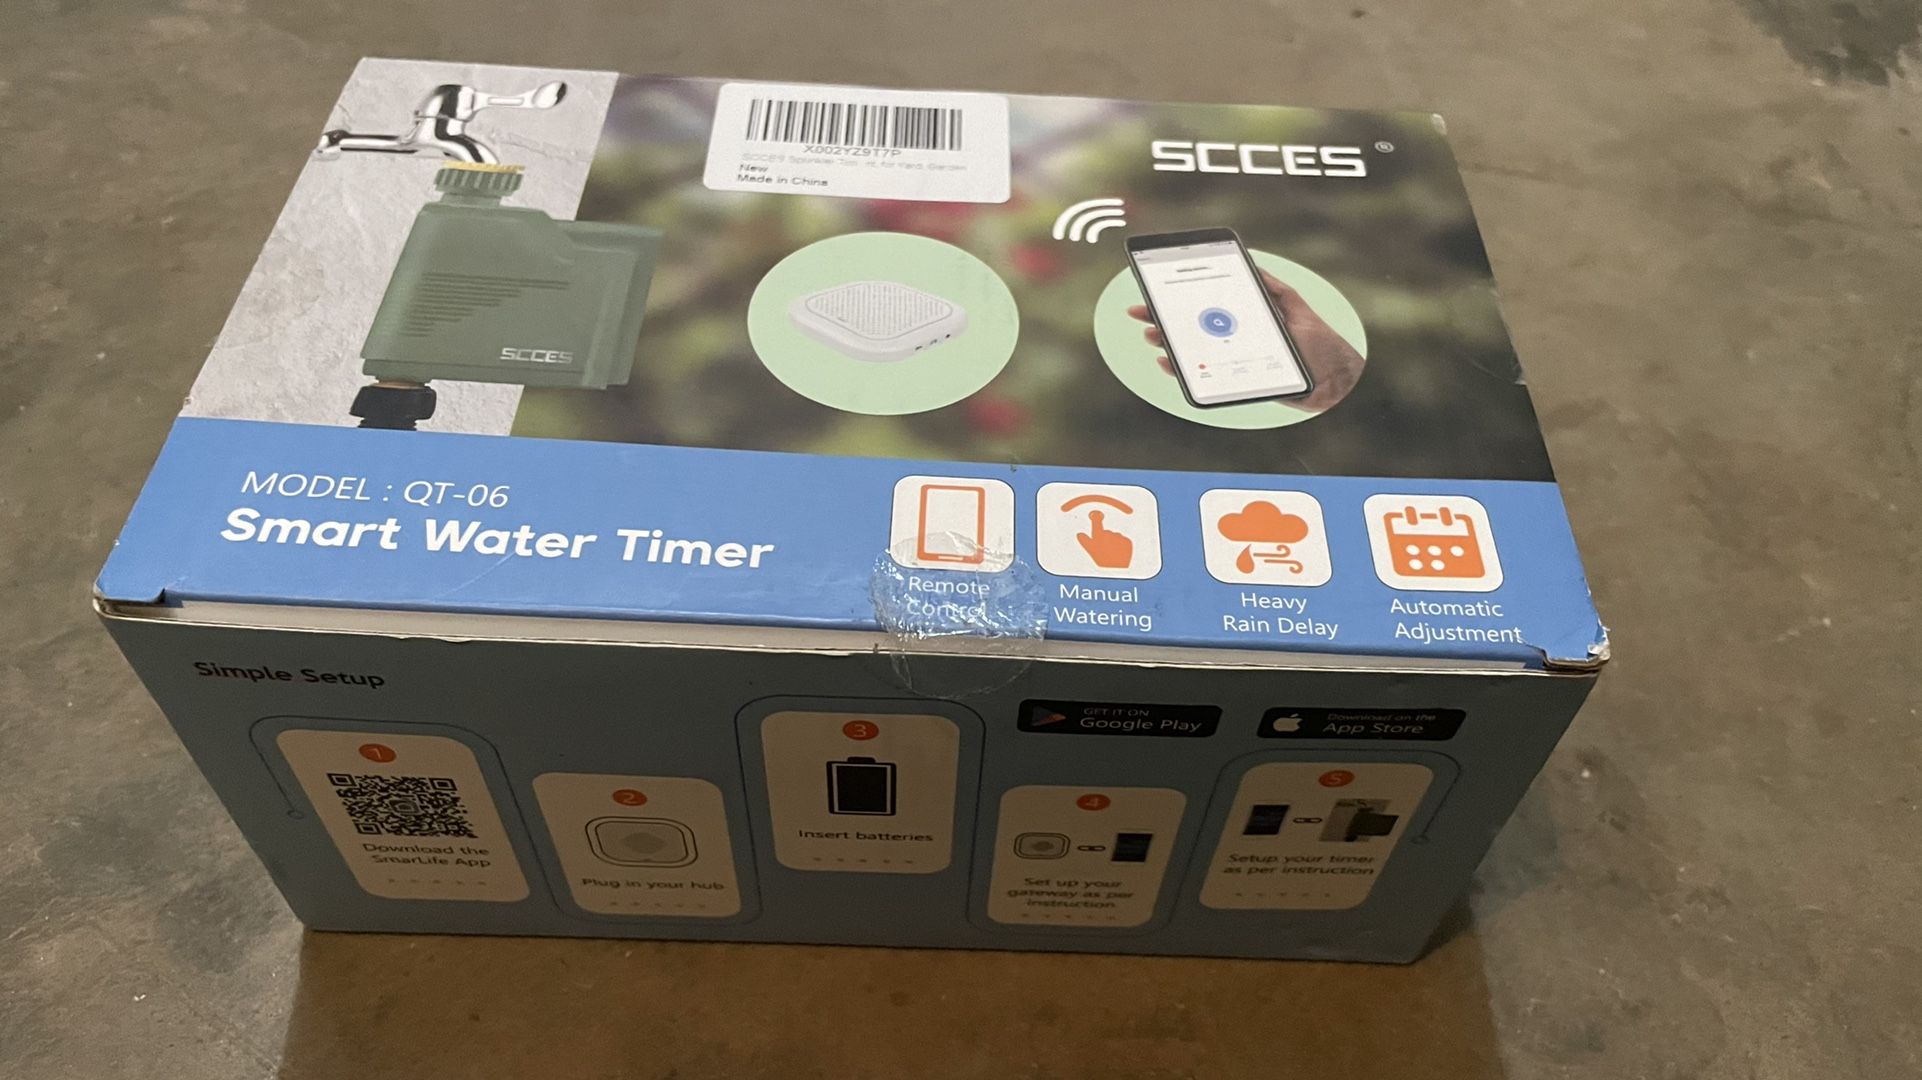 Smart Sprinkler Timer with WiFi Hub